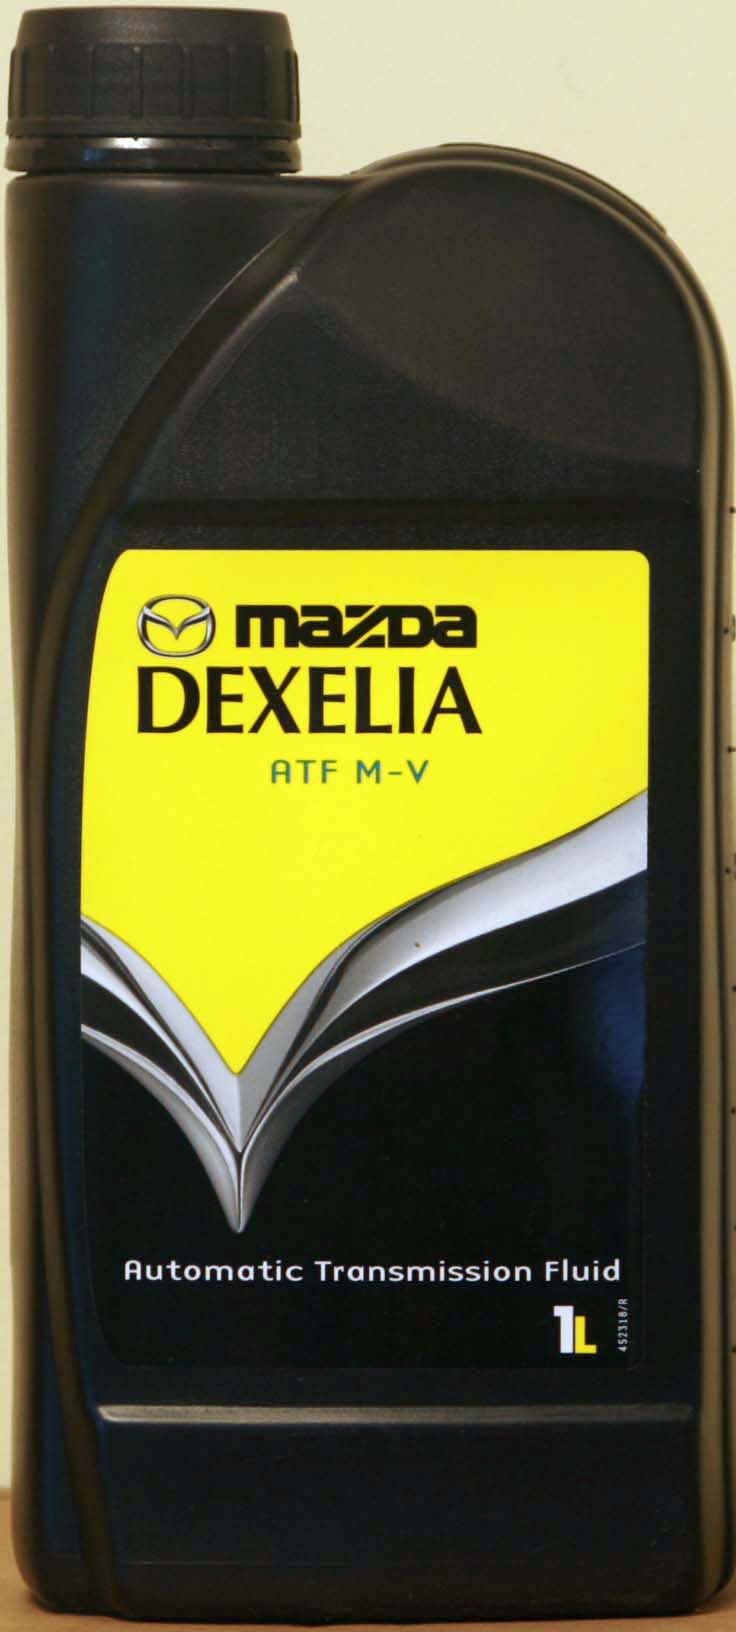 Трансмиссионные масла mazda. Масло Мазда ATF M 3. Mazda Dexelia ATF M-V. Dexelia ATF M-3. ATF M-V Mazda 4 литра.